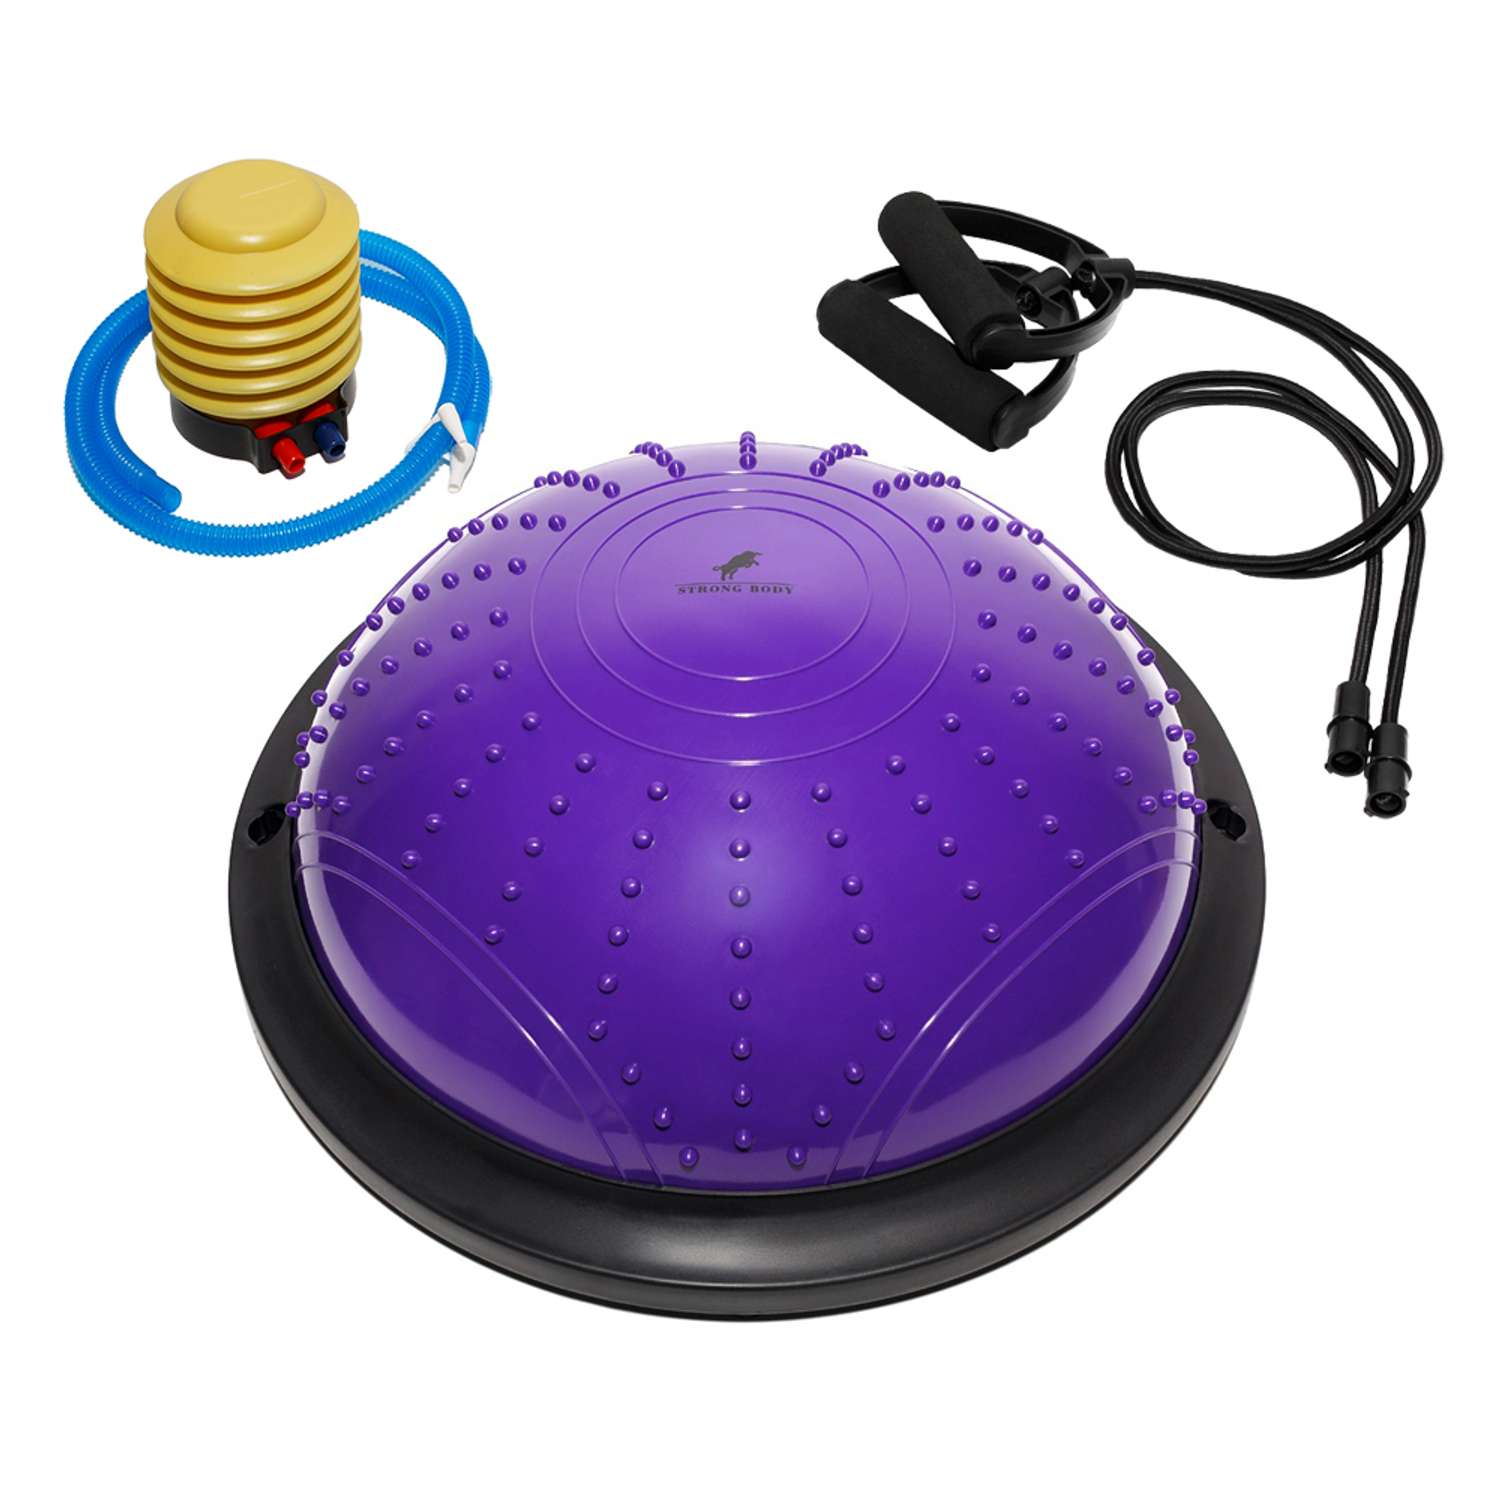 Балансировочная полусфера BOSU STRONG BODY в комплекте со съемными эспандерами фиолетовая - фото 4